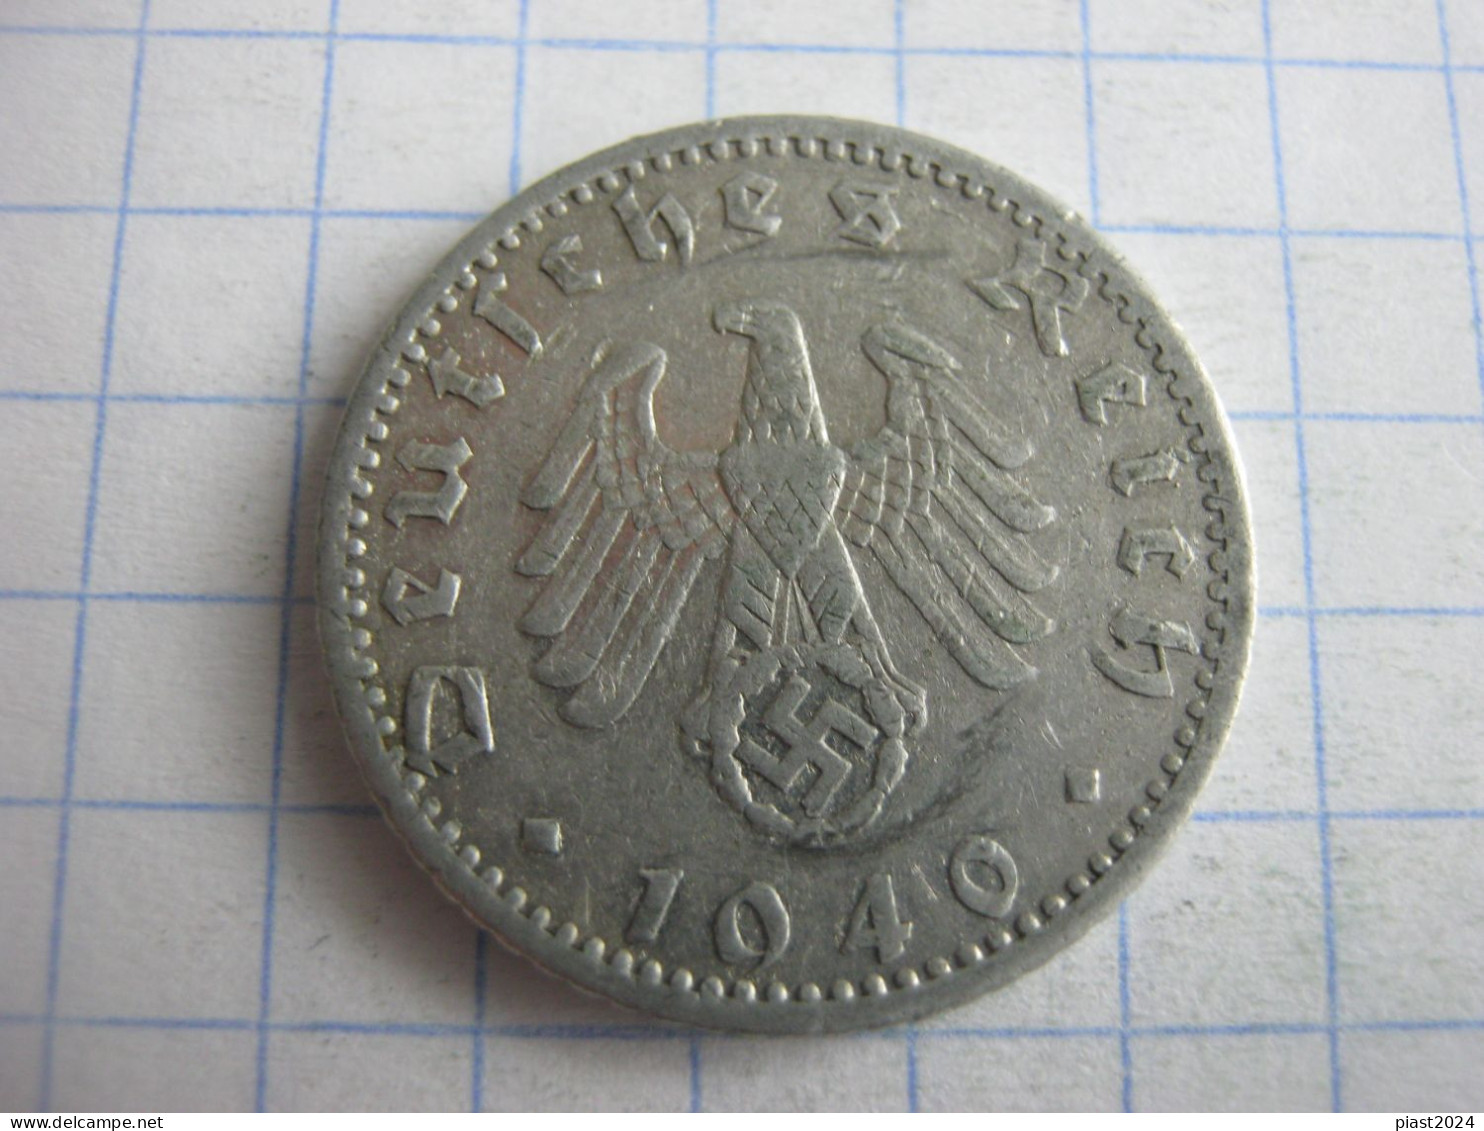 Germany 50 Reichspfennig 1940 F - 50 Reichspfennig